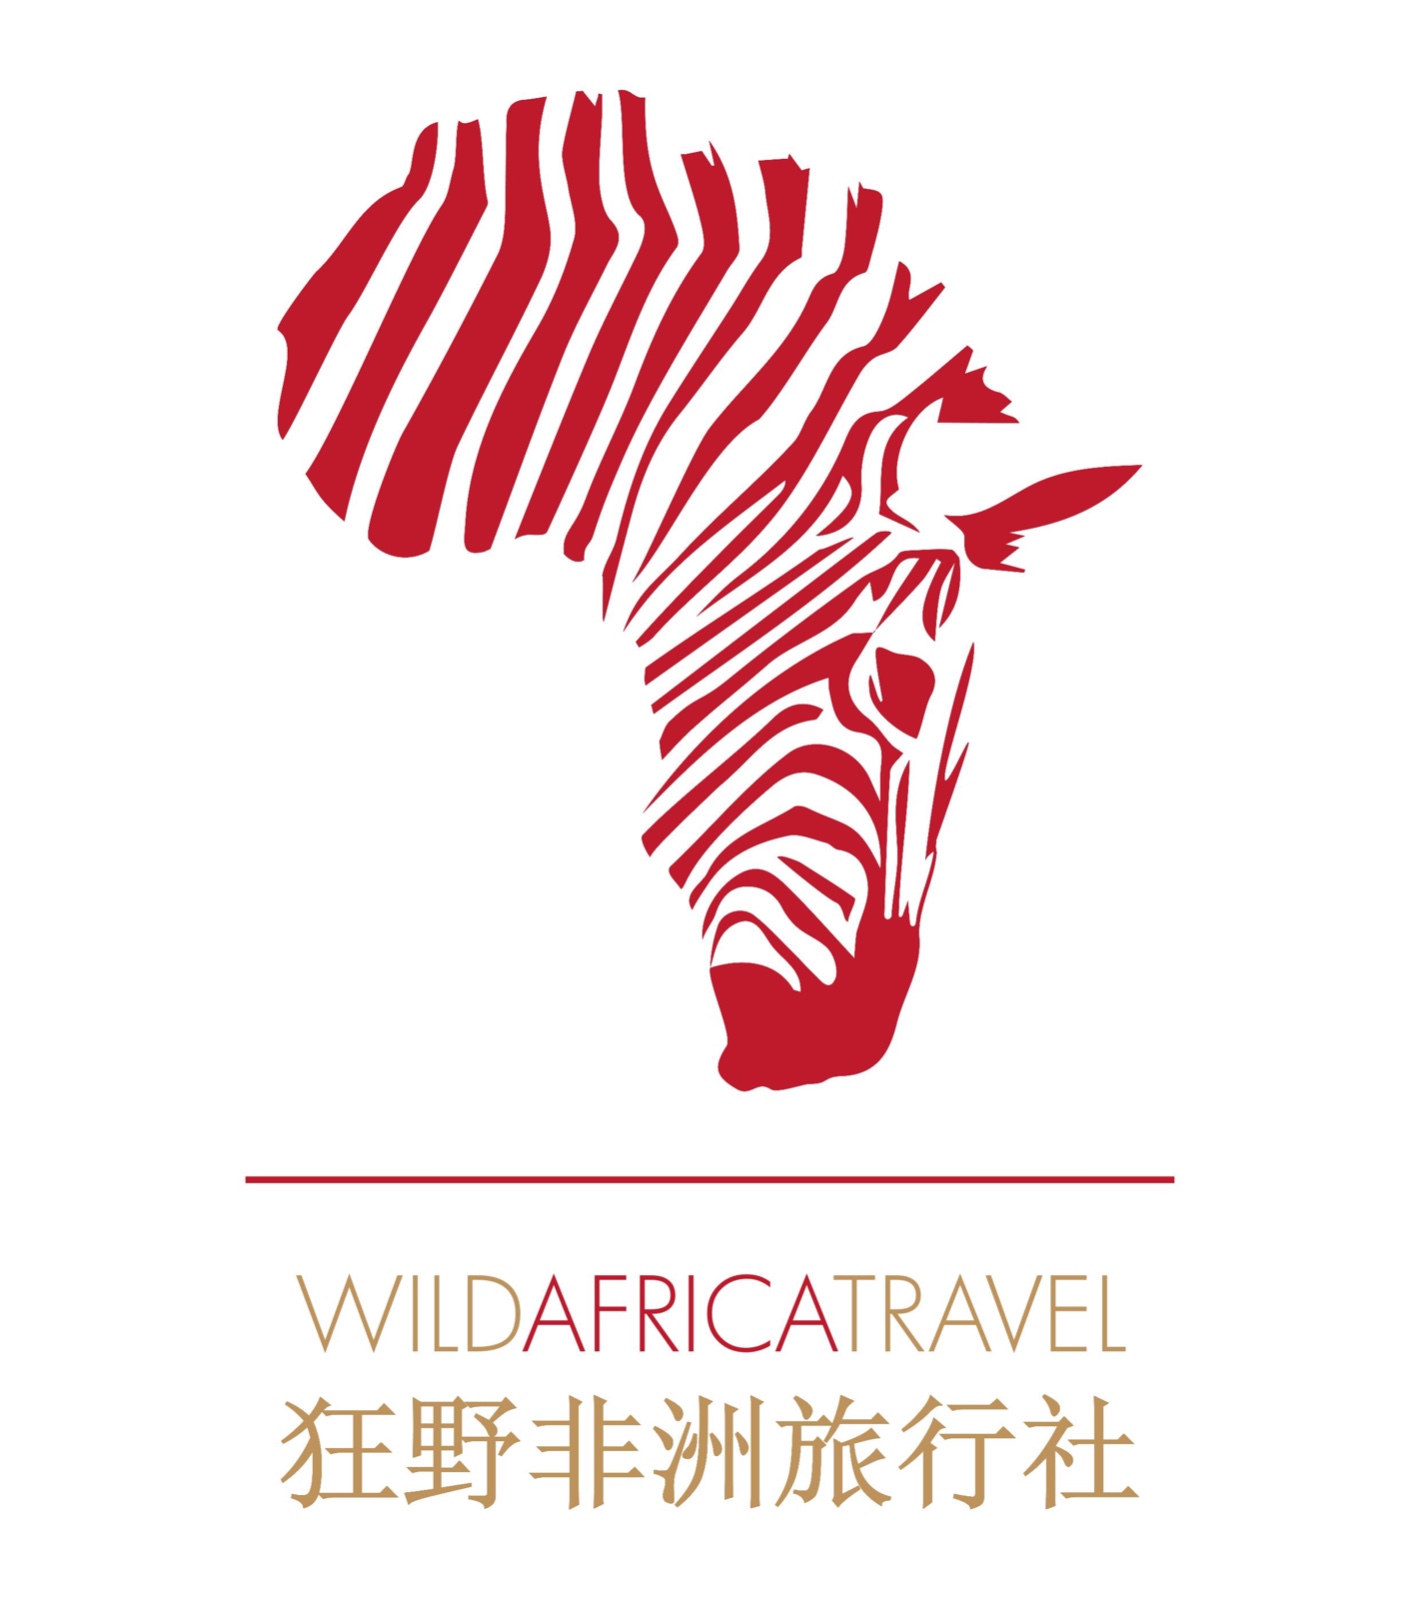 津巴布韦狂野非洲旅行社